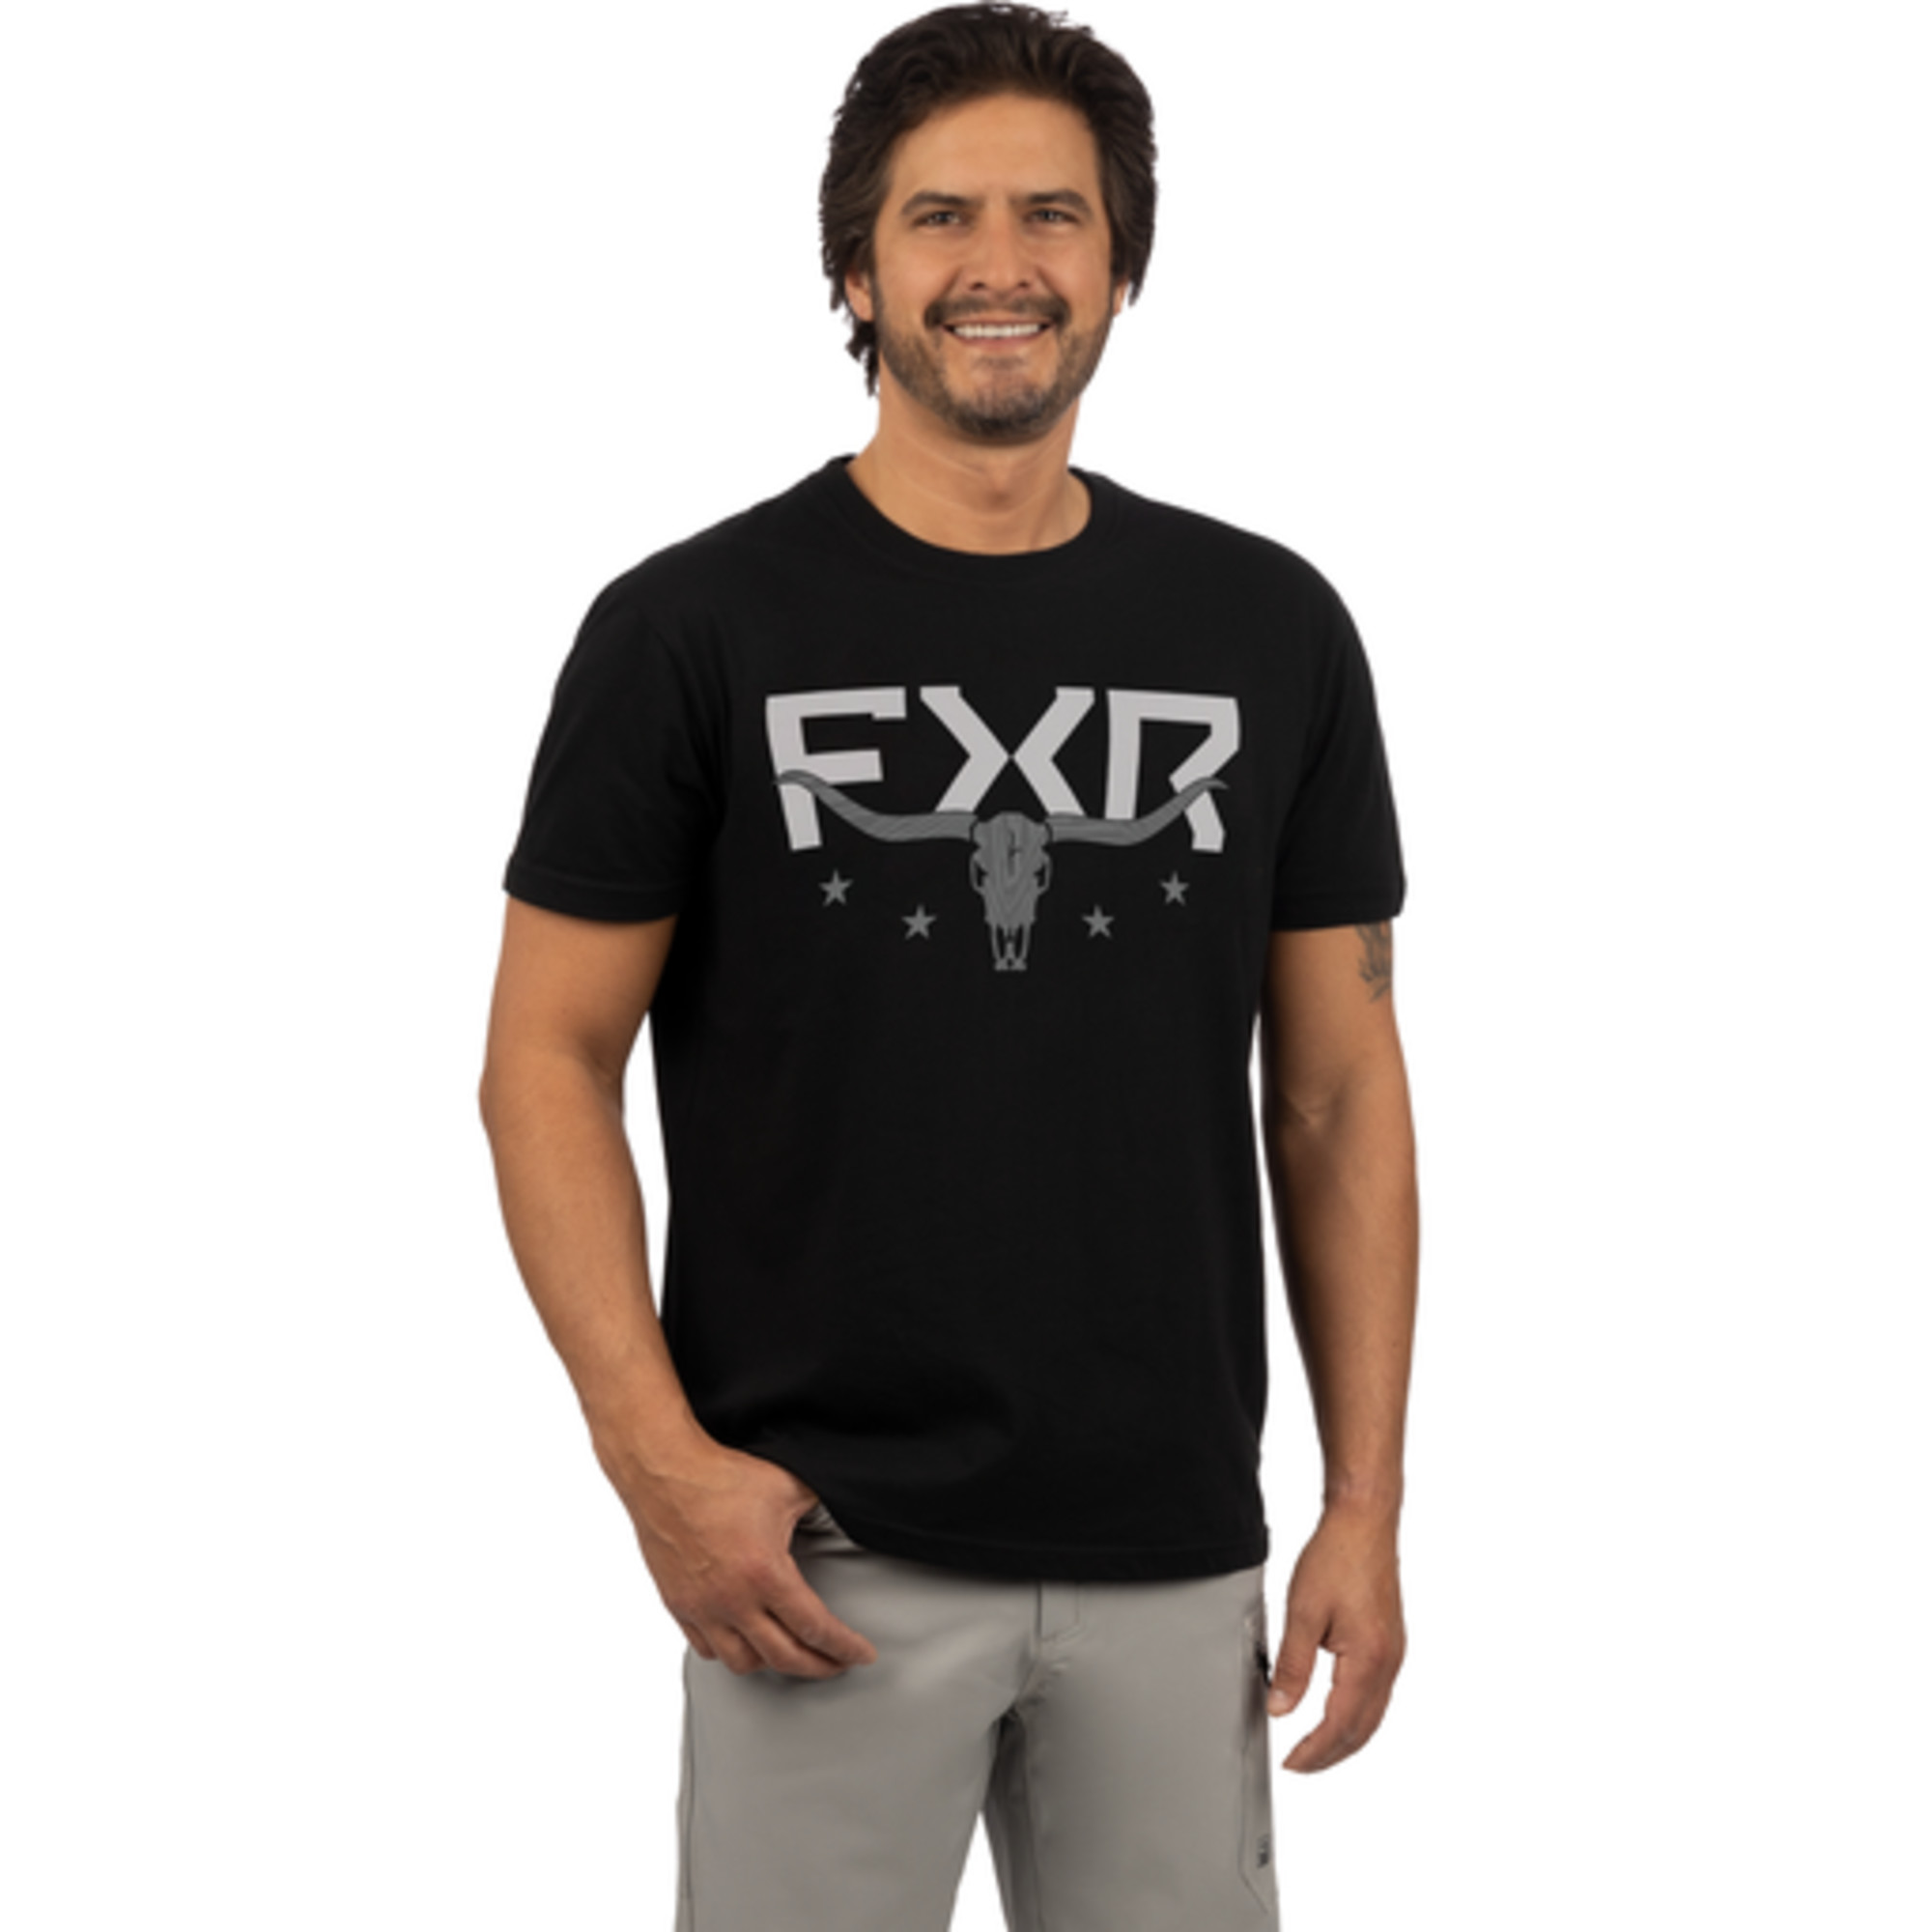 fxr racing t-shirt shirts for men antler premium